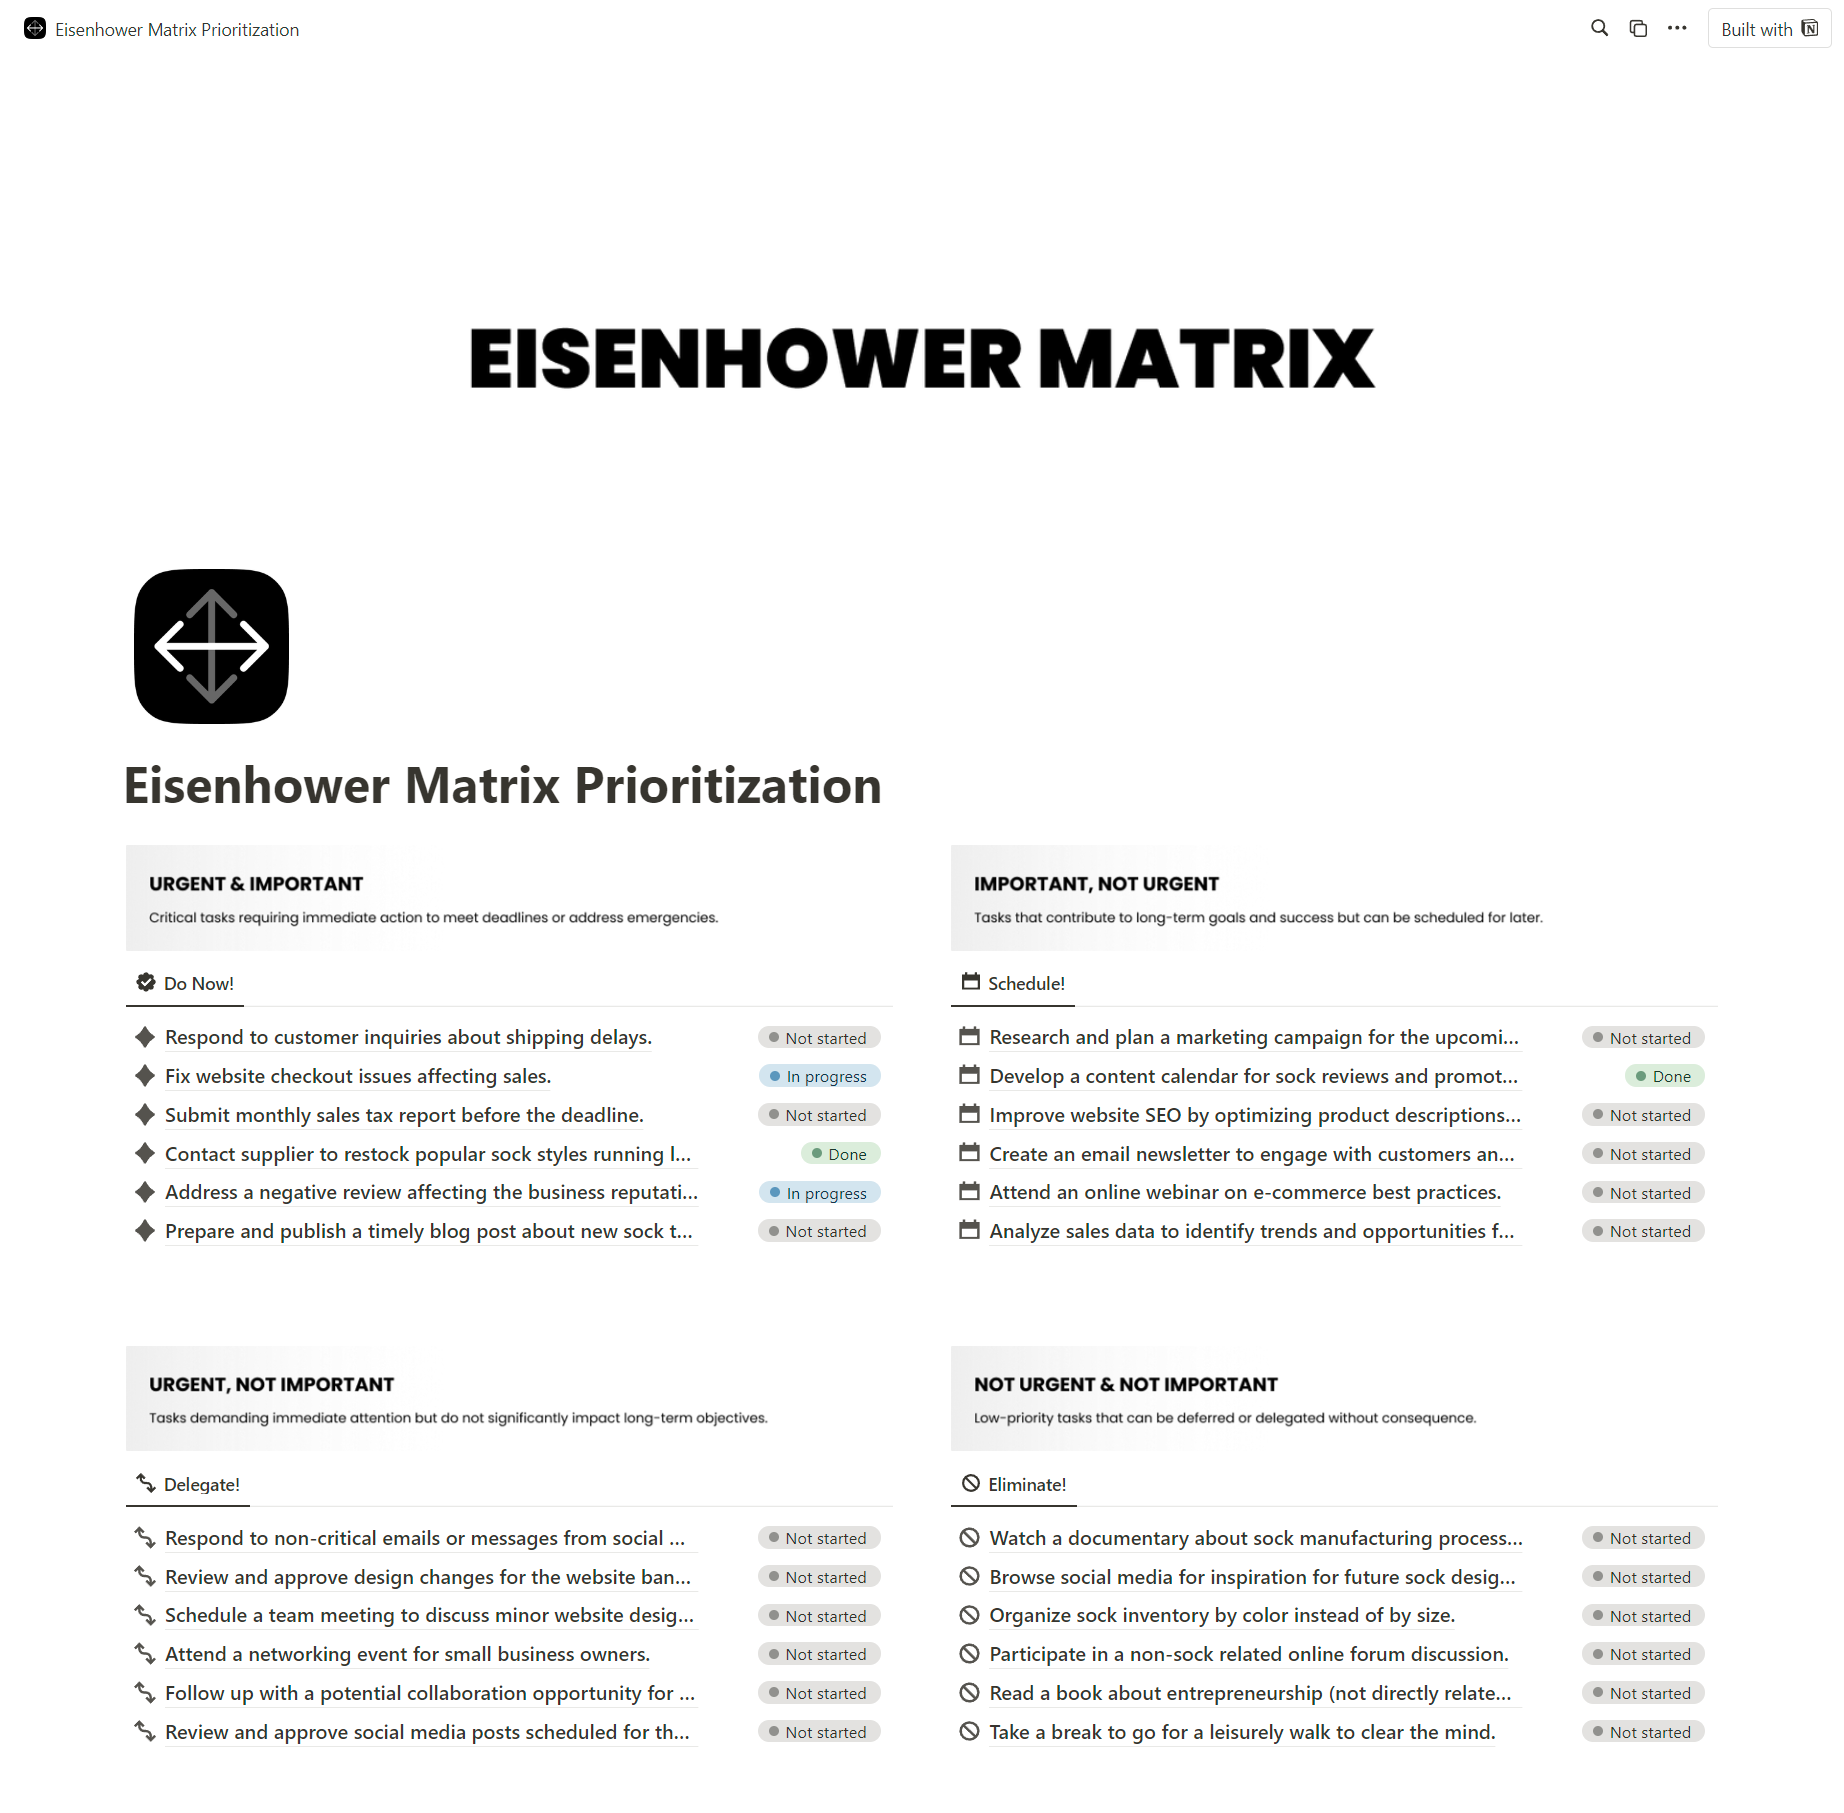 Eisenhower Matrix Prioritization for Notion